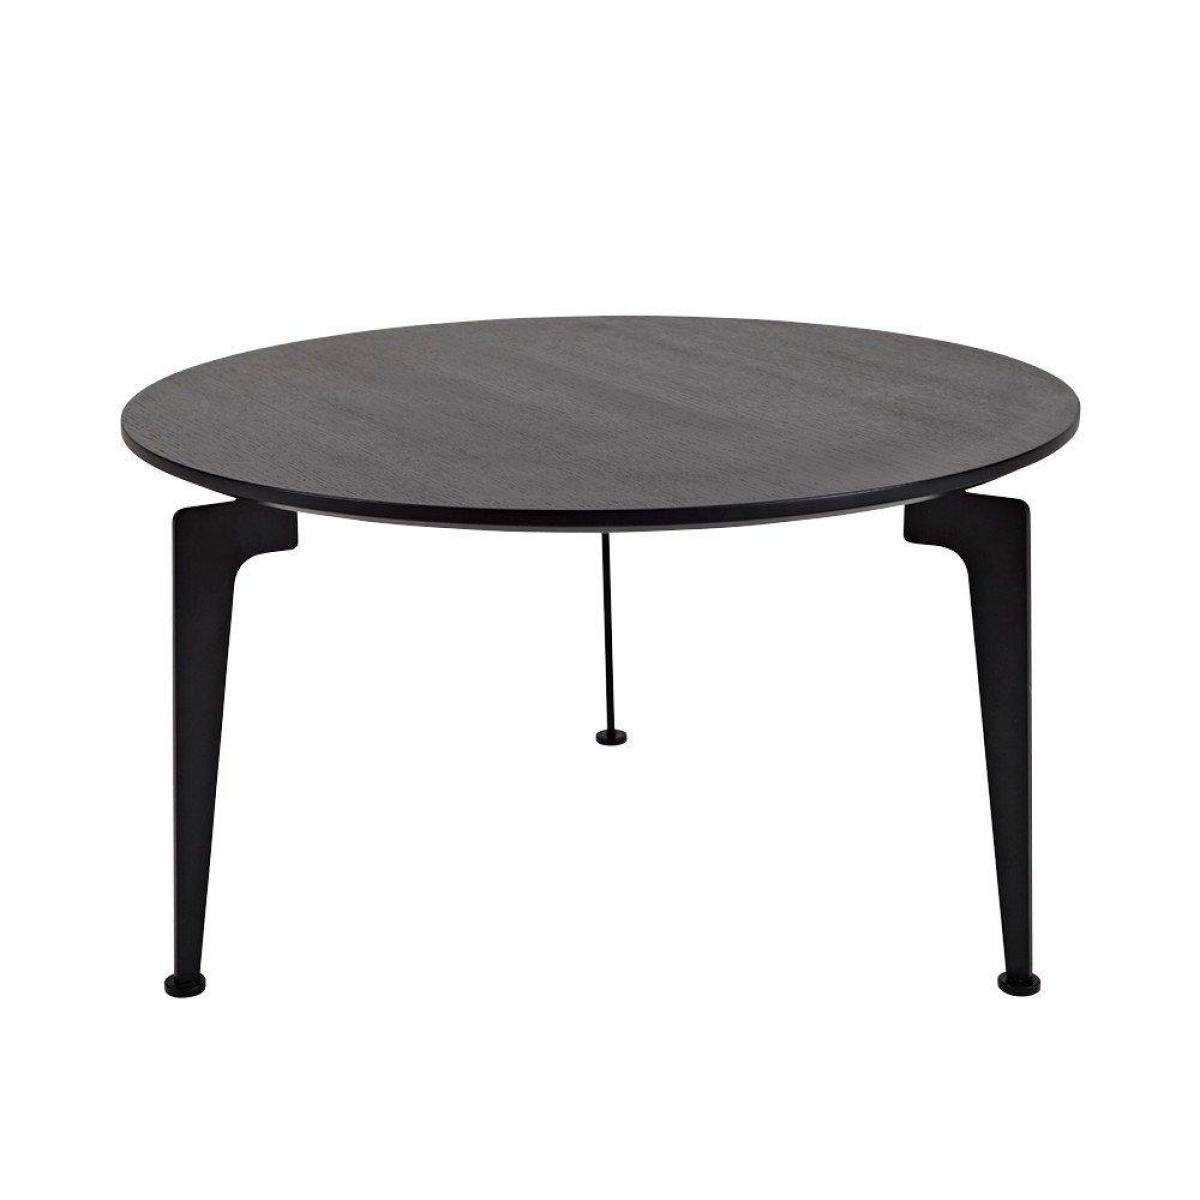 Inside 75 - INNOVATION LIVING Table basse design scandinave LASER taille L noire - Tables à manger